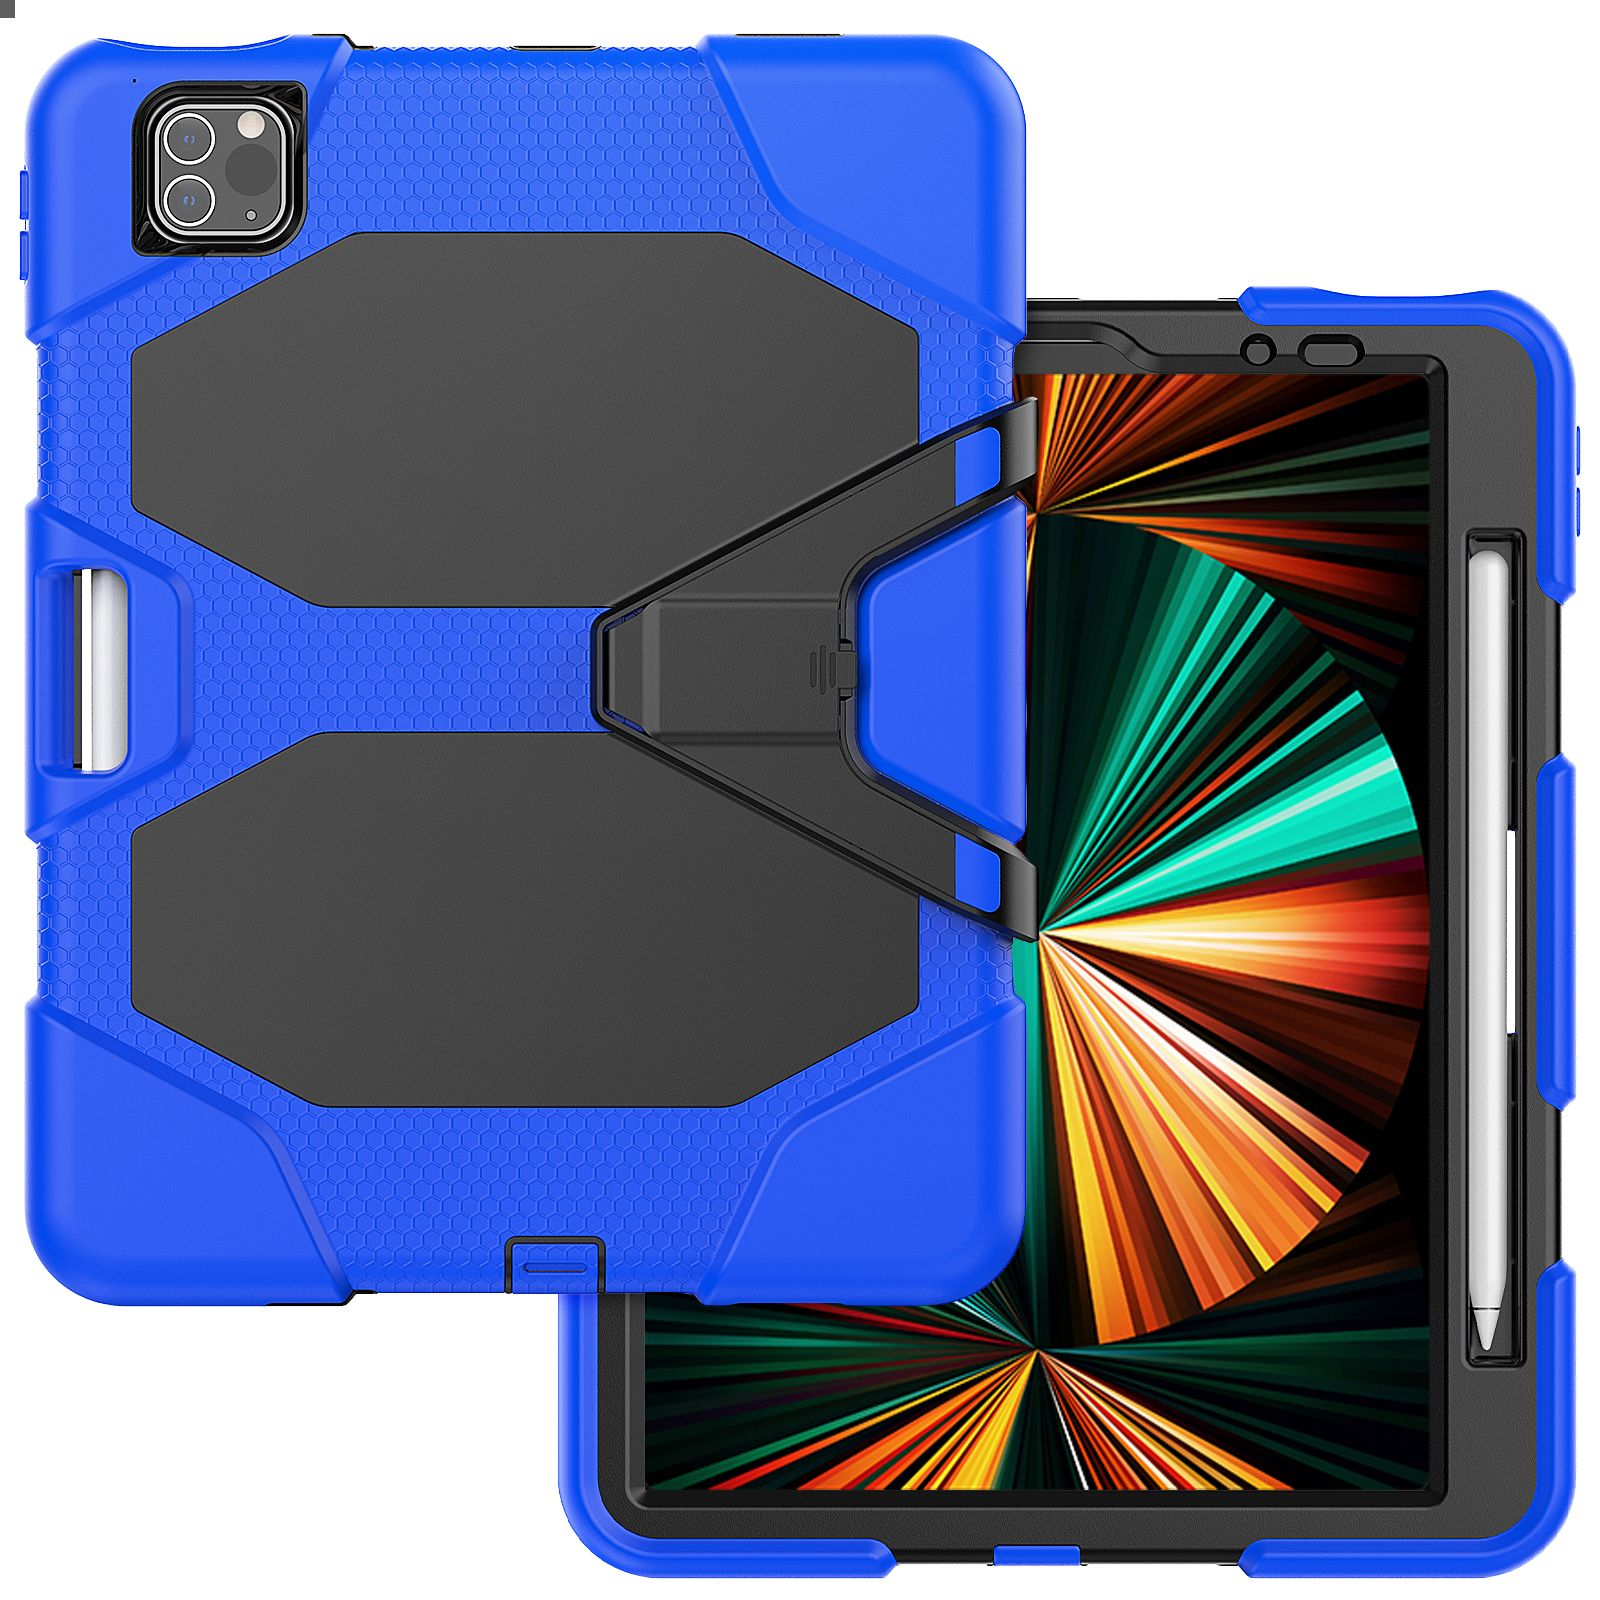 4 2020/2021/2022 Blau Case 3in1 iPad Pro Schutzhülle für 11 Air Bookcover Kunststoff, LOBWERK Outdoor Apple